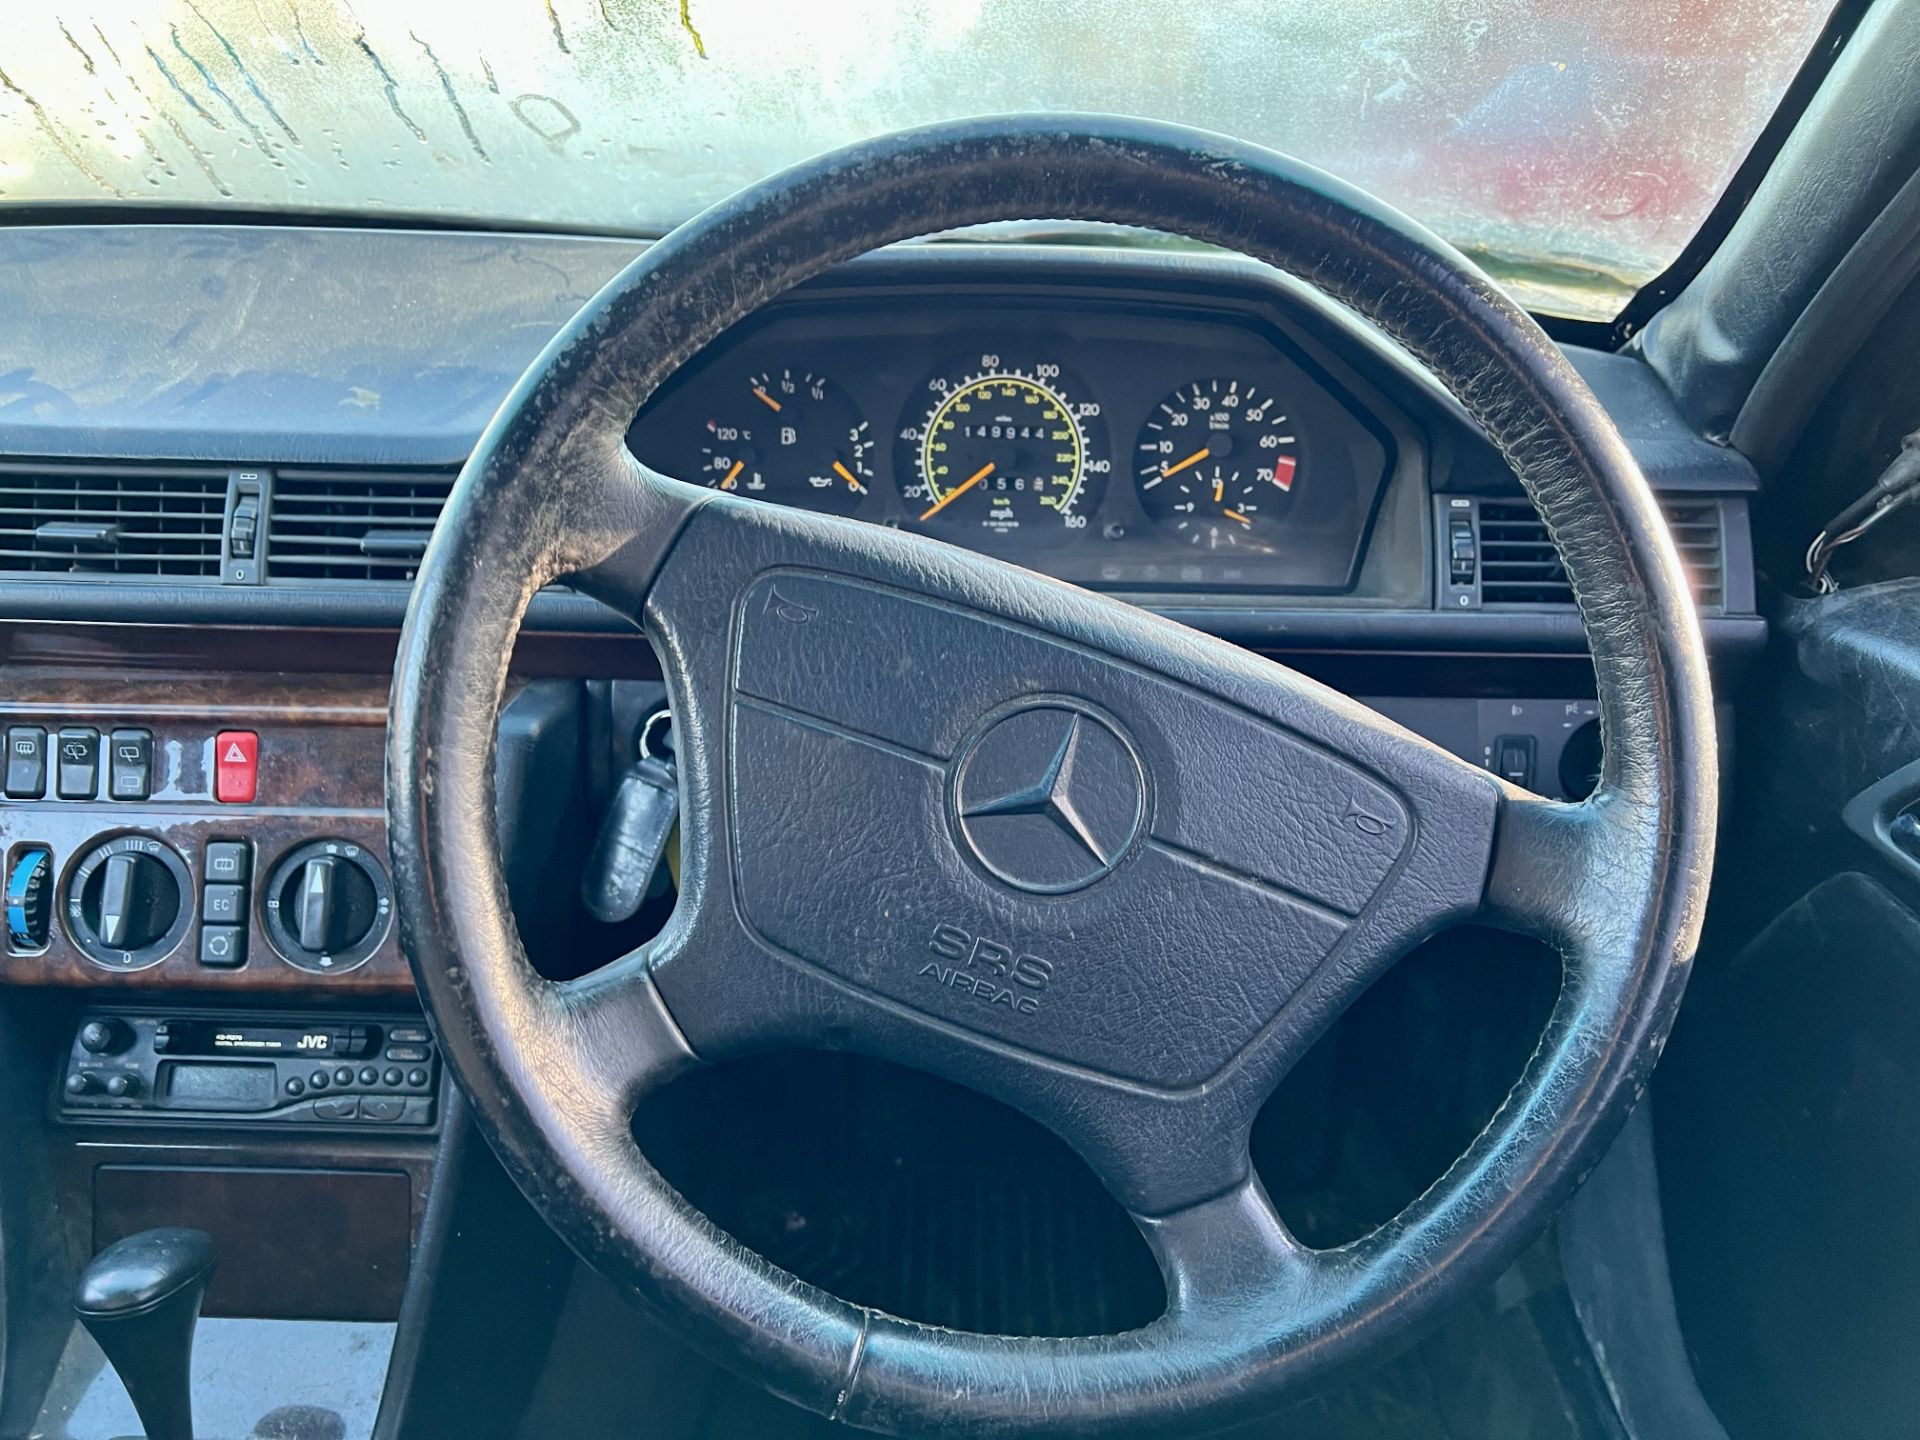 Mercedes-Benz E300 Hearse - Image 21 of 25